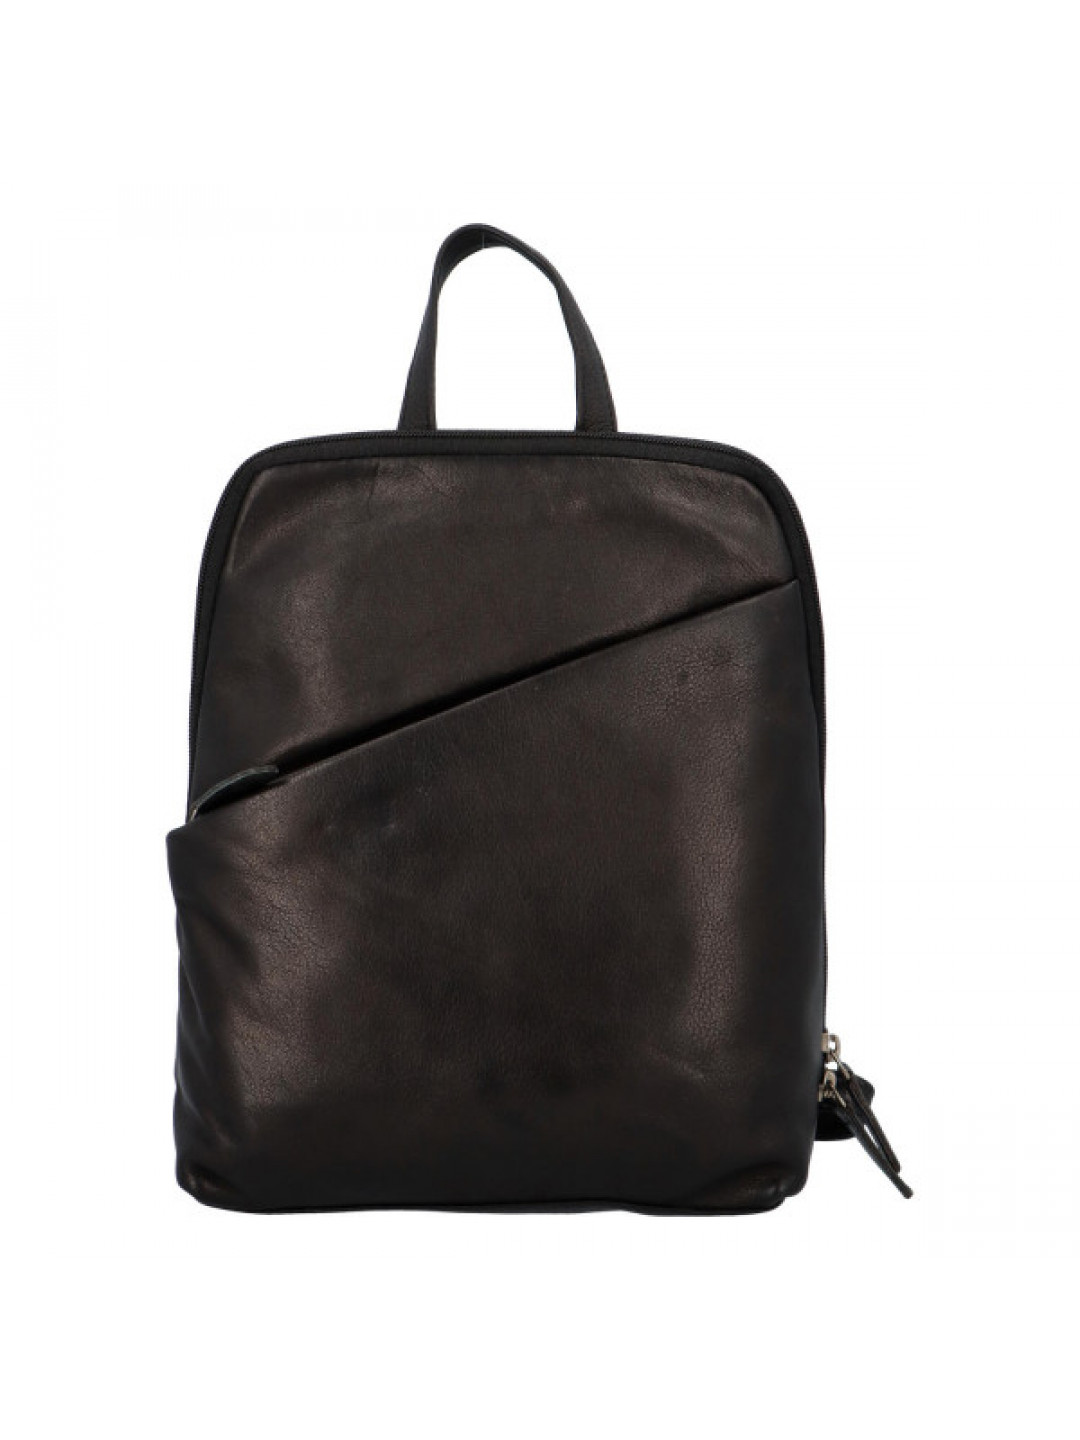 Praktický dámský kožený batoh Indila černý